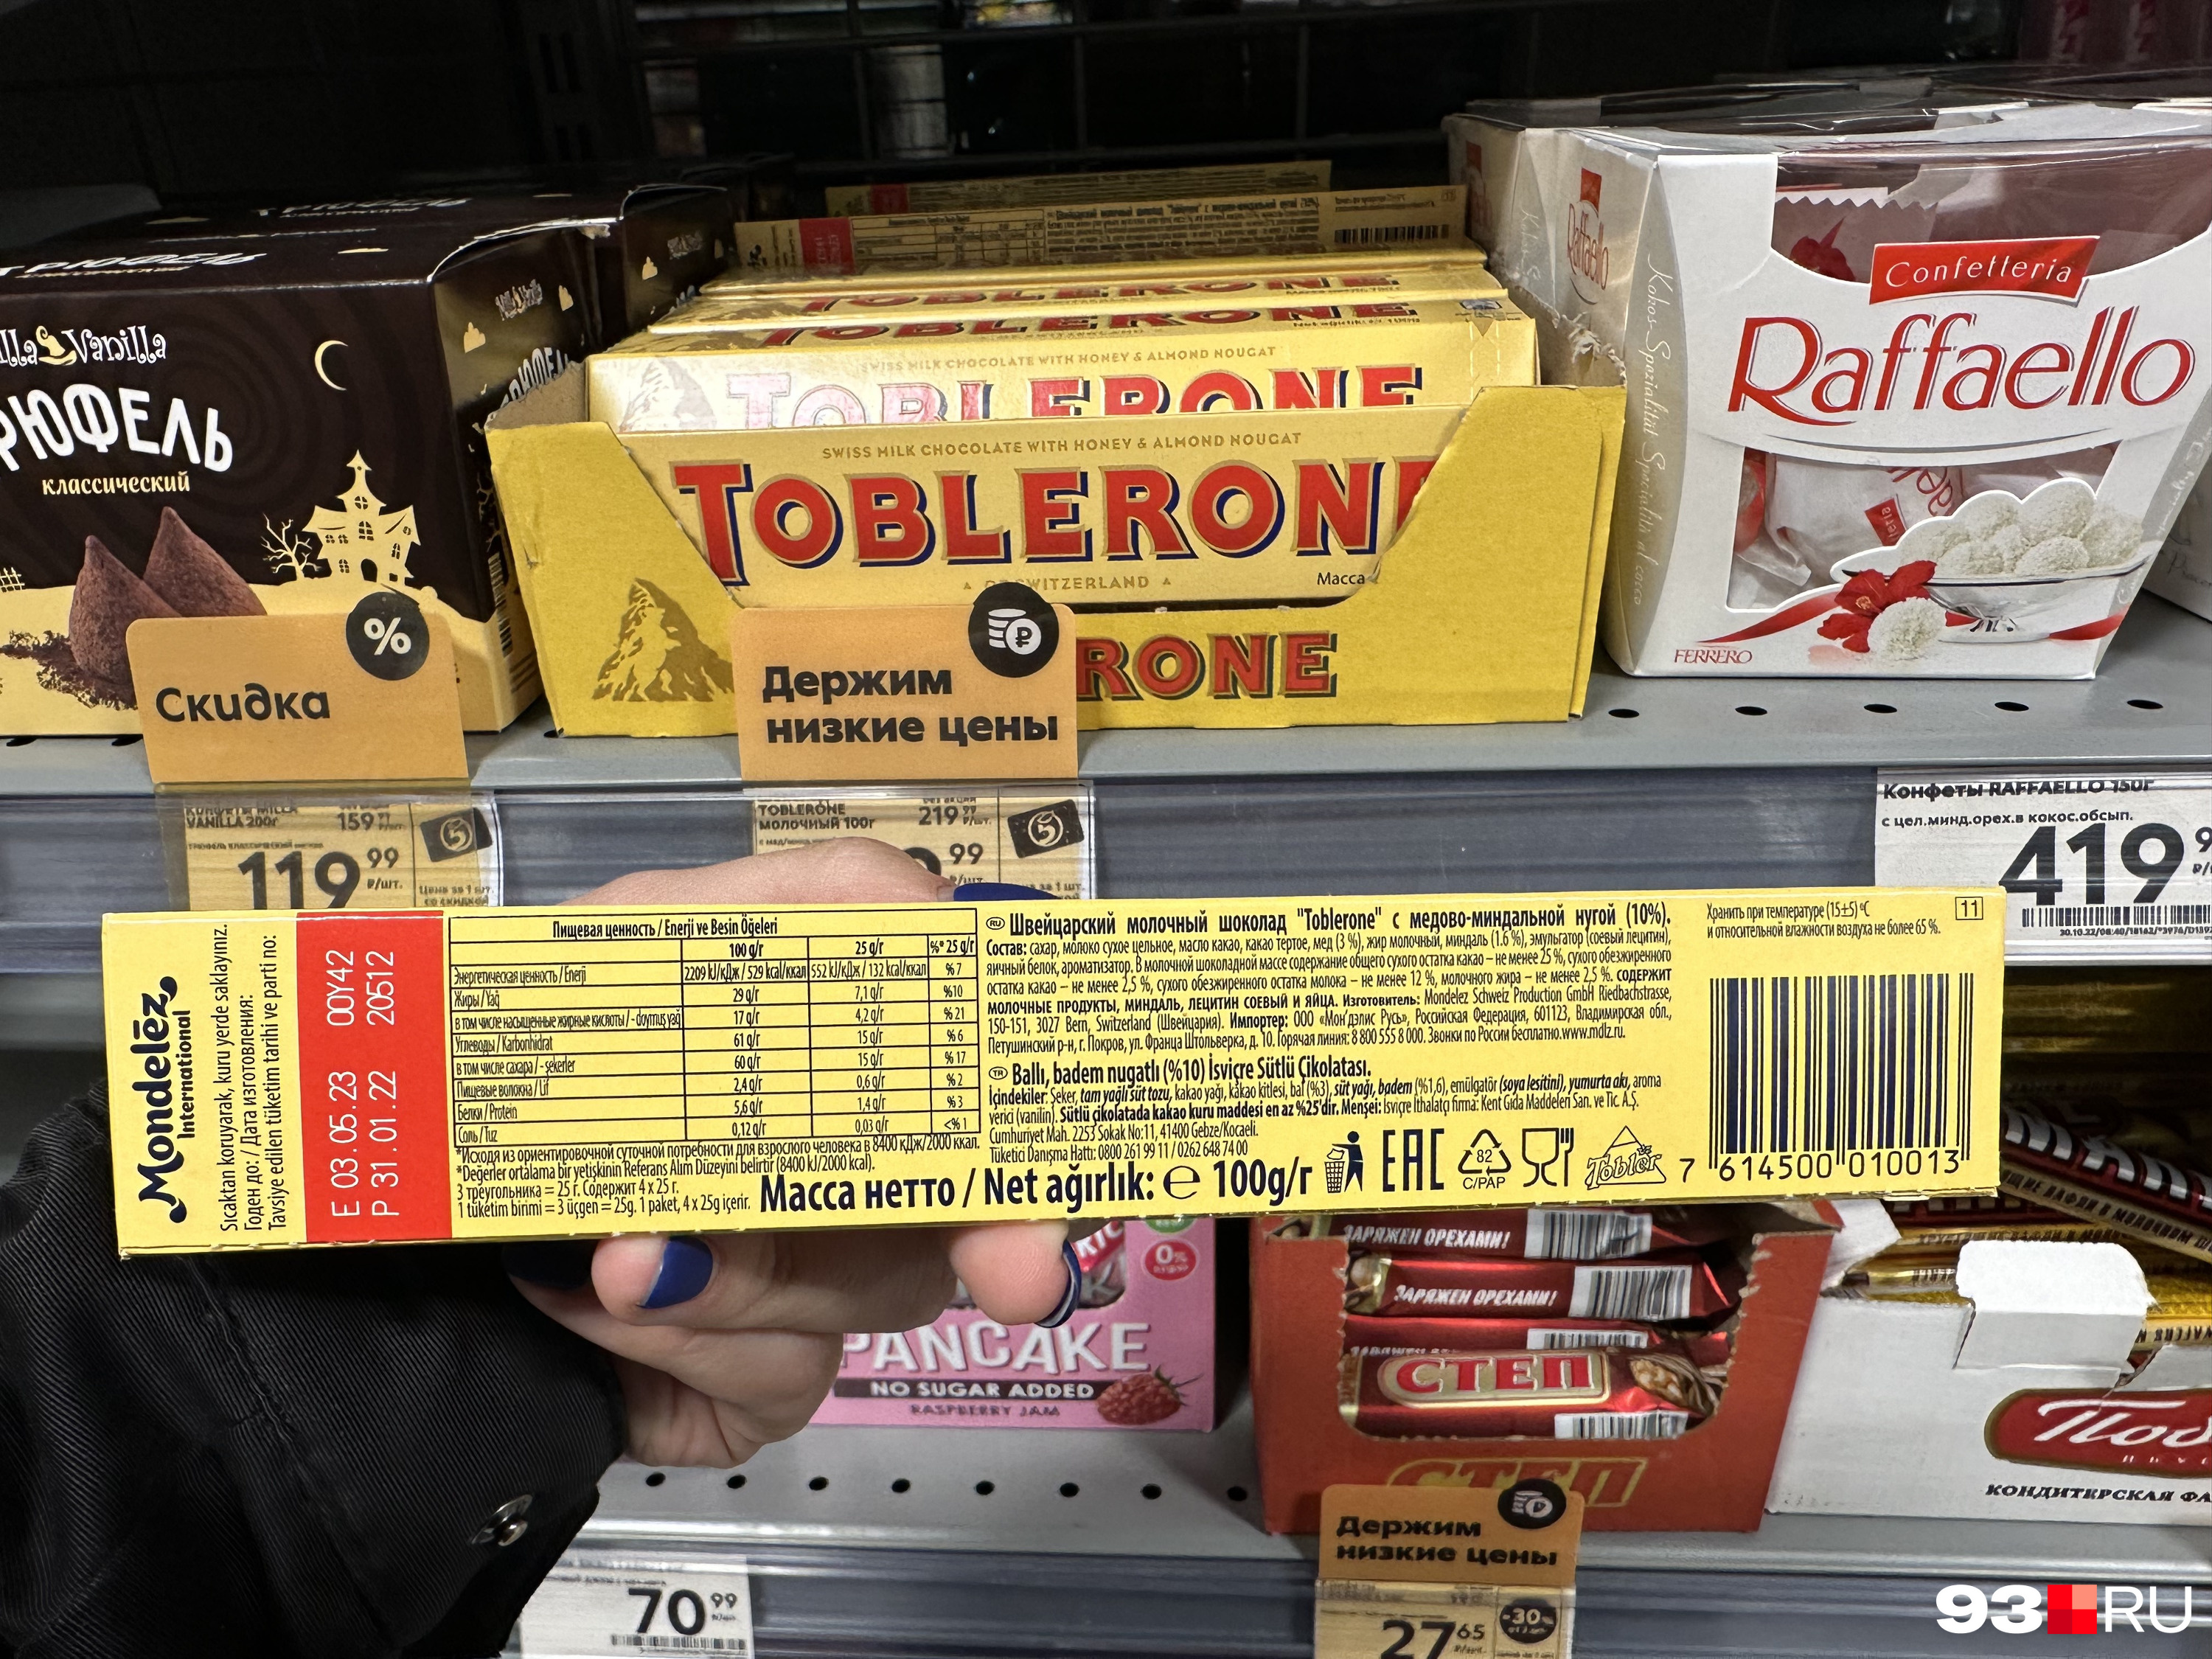 Помимо швейцарского Toblerone, мы нашли итальянские Kinder и бельгийский шоколад Milka